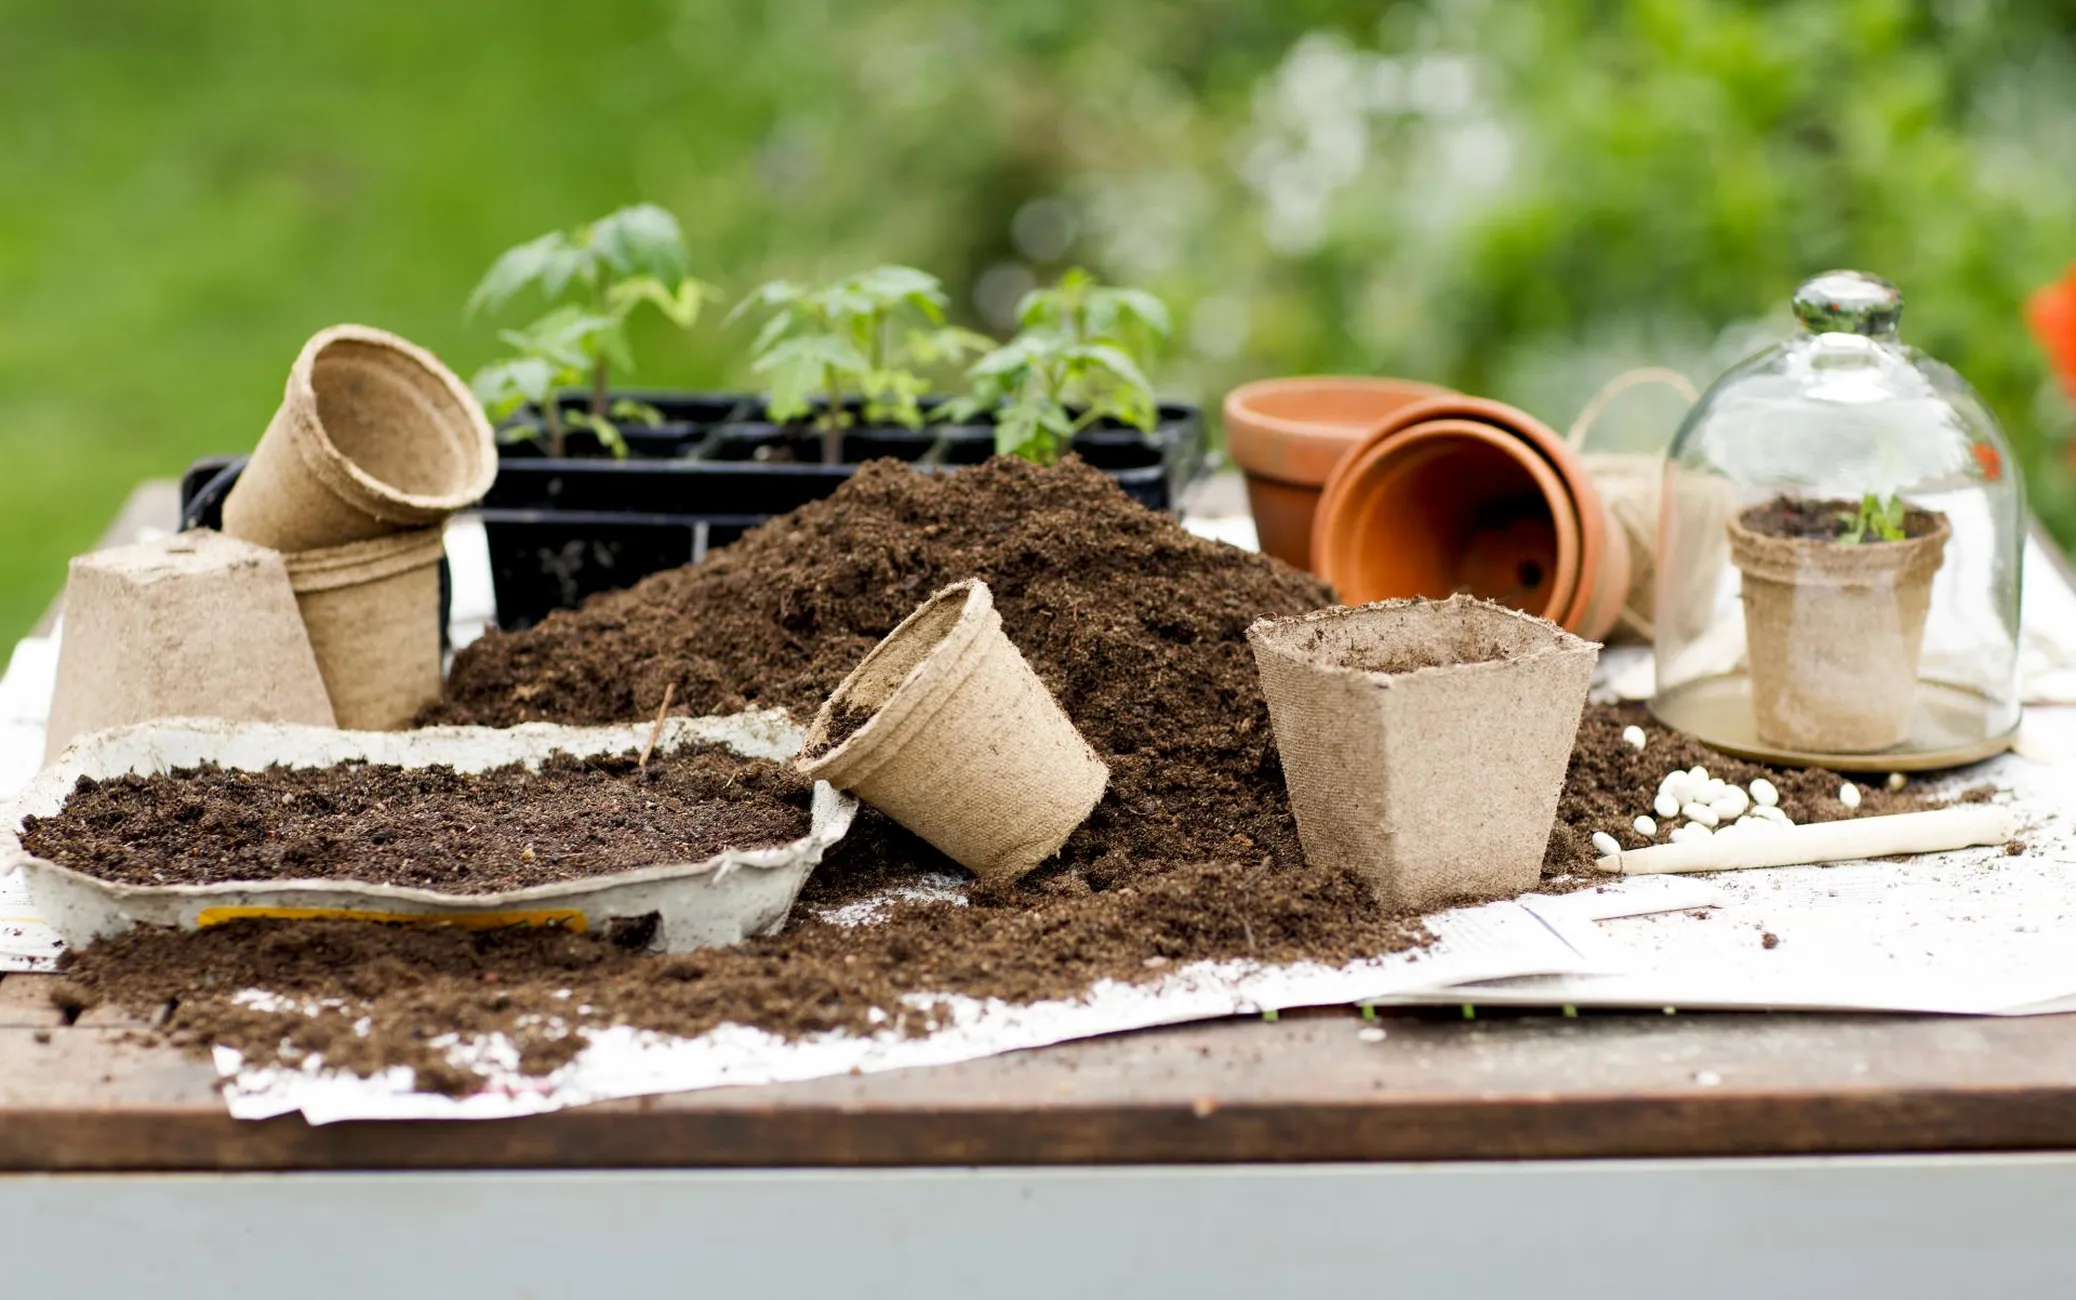 Papist potti istutatud tomatitaime võib mai teisel poolel kasvuhoones mulda panna koos potiga.